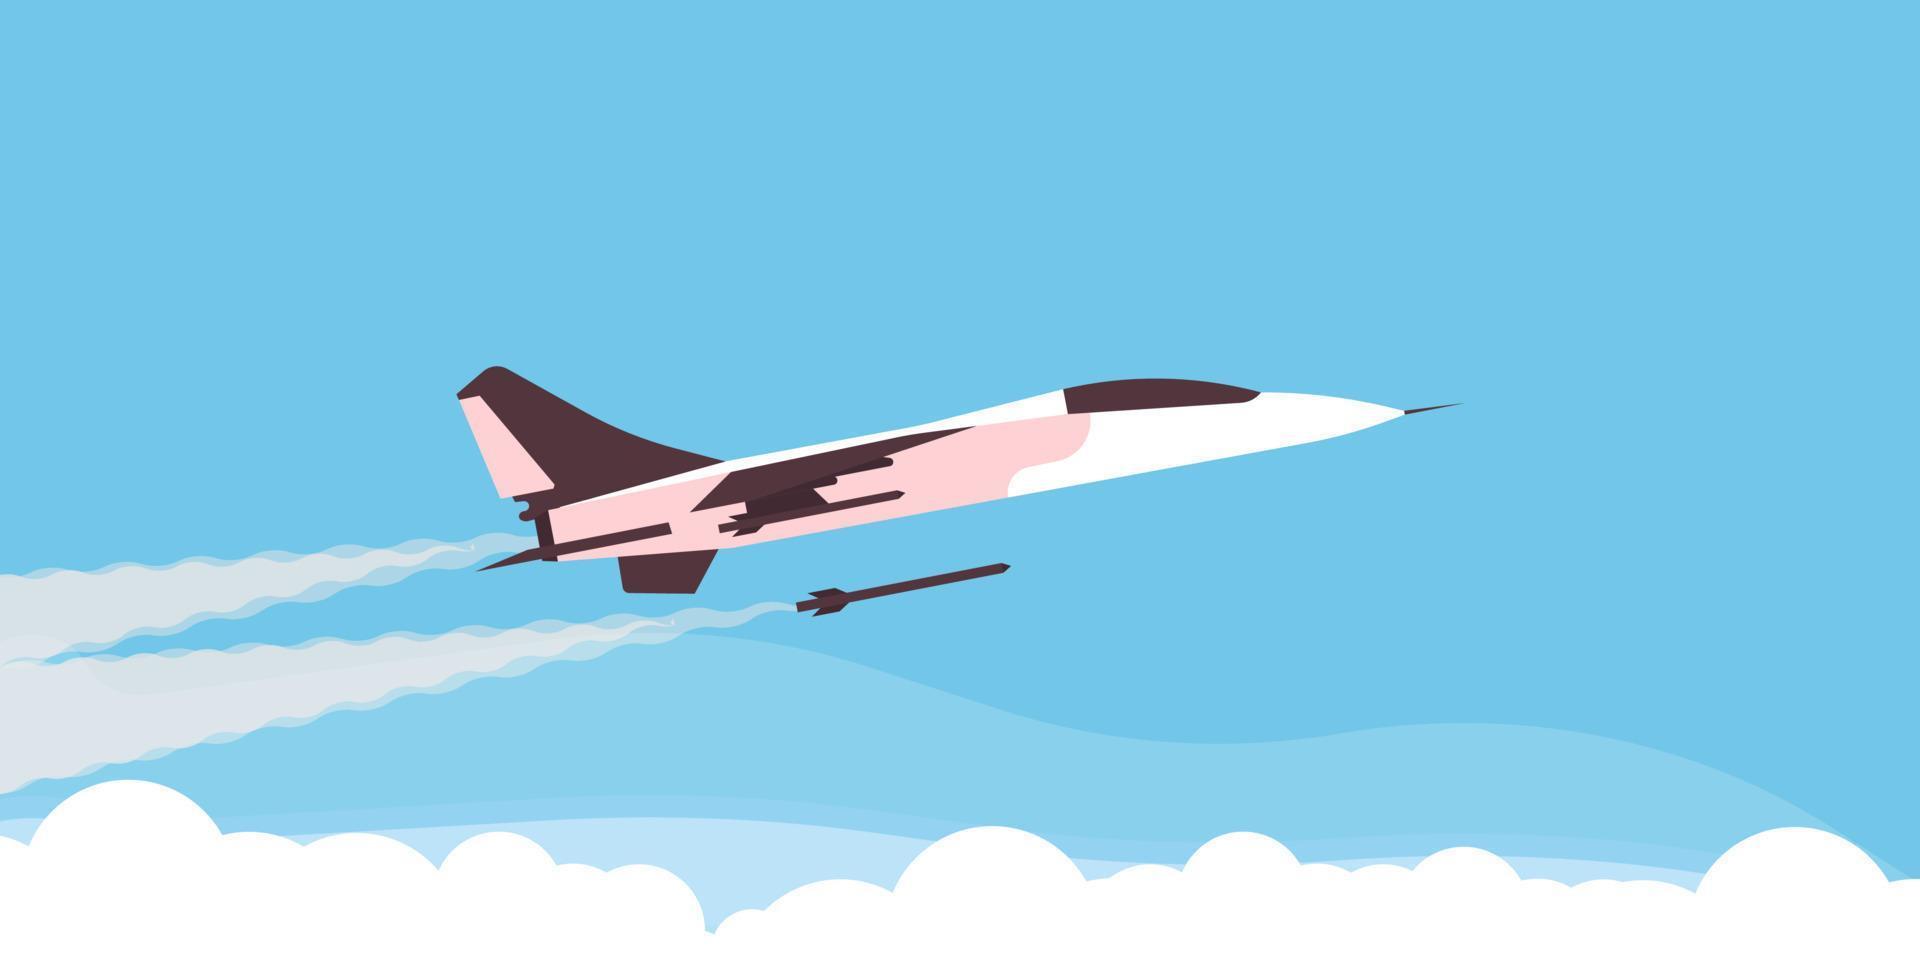 super kampfflugzeug flugzeug vektor militärische kraft geschwindigkeit. armee illustration luftfahrt krieg verteidigung himmel transport. Cartoon-Konzept-Hintergrund-Abfangjäger